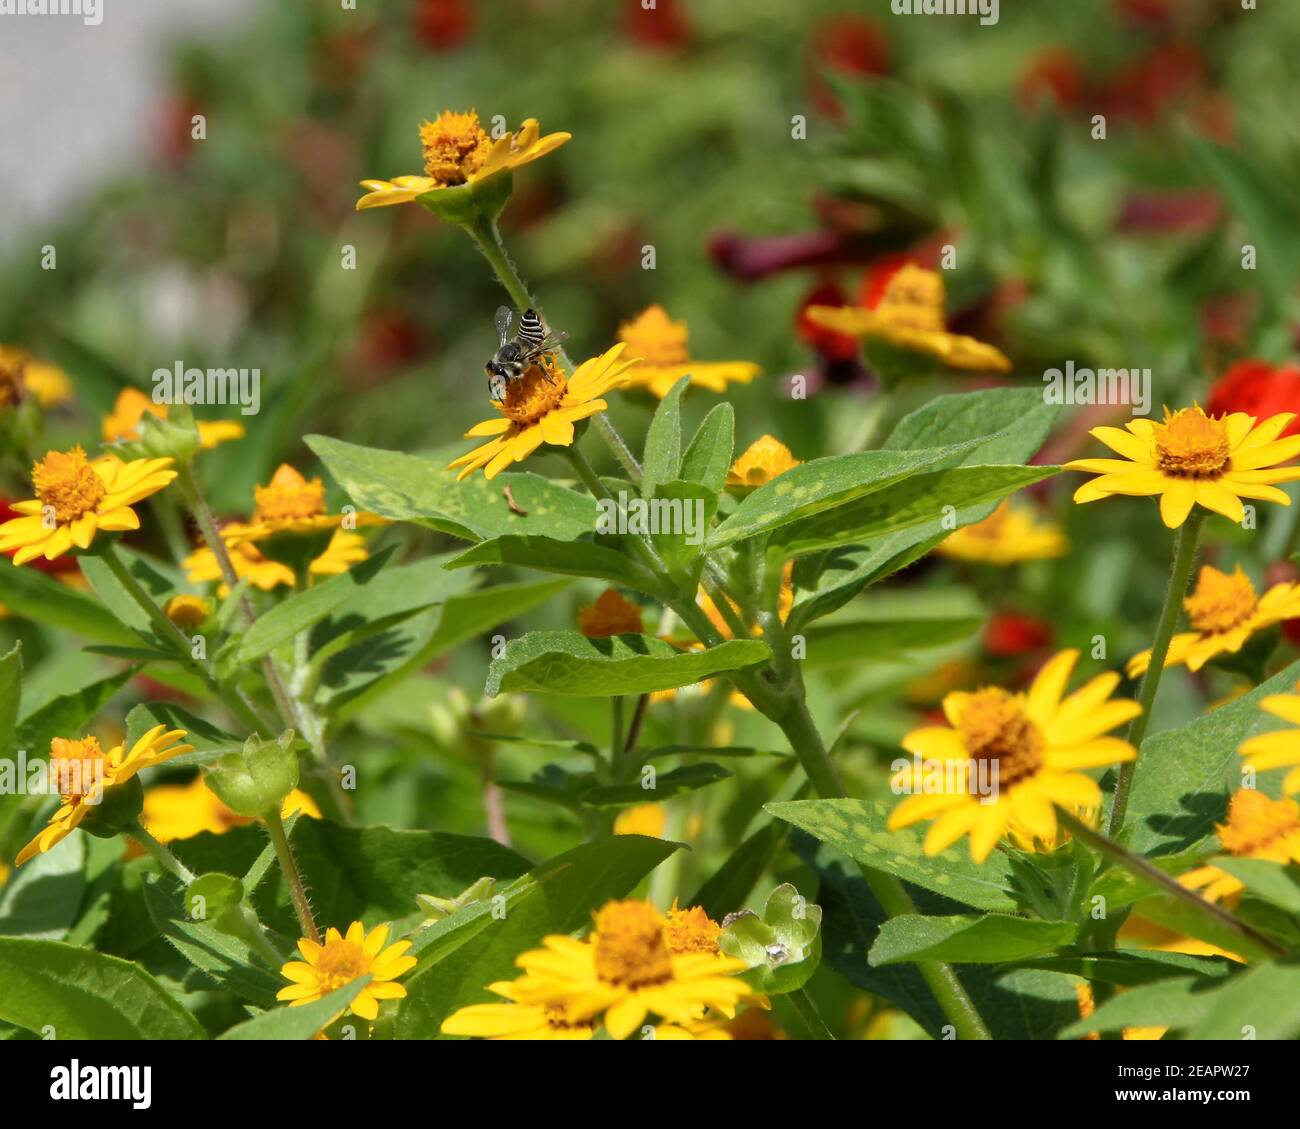 Una pequeña abeja negra y blanca de Texas Leaf Cutter recoge el polen de una flor amarilla en un jardín municipal en Oklahoma City. Foto de stock